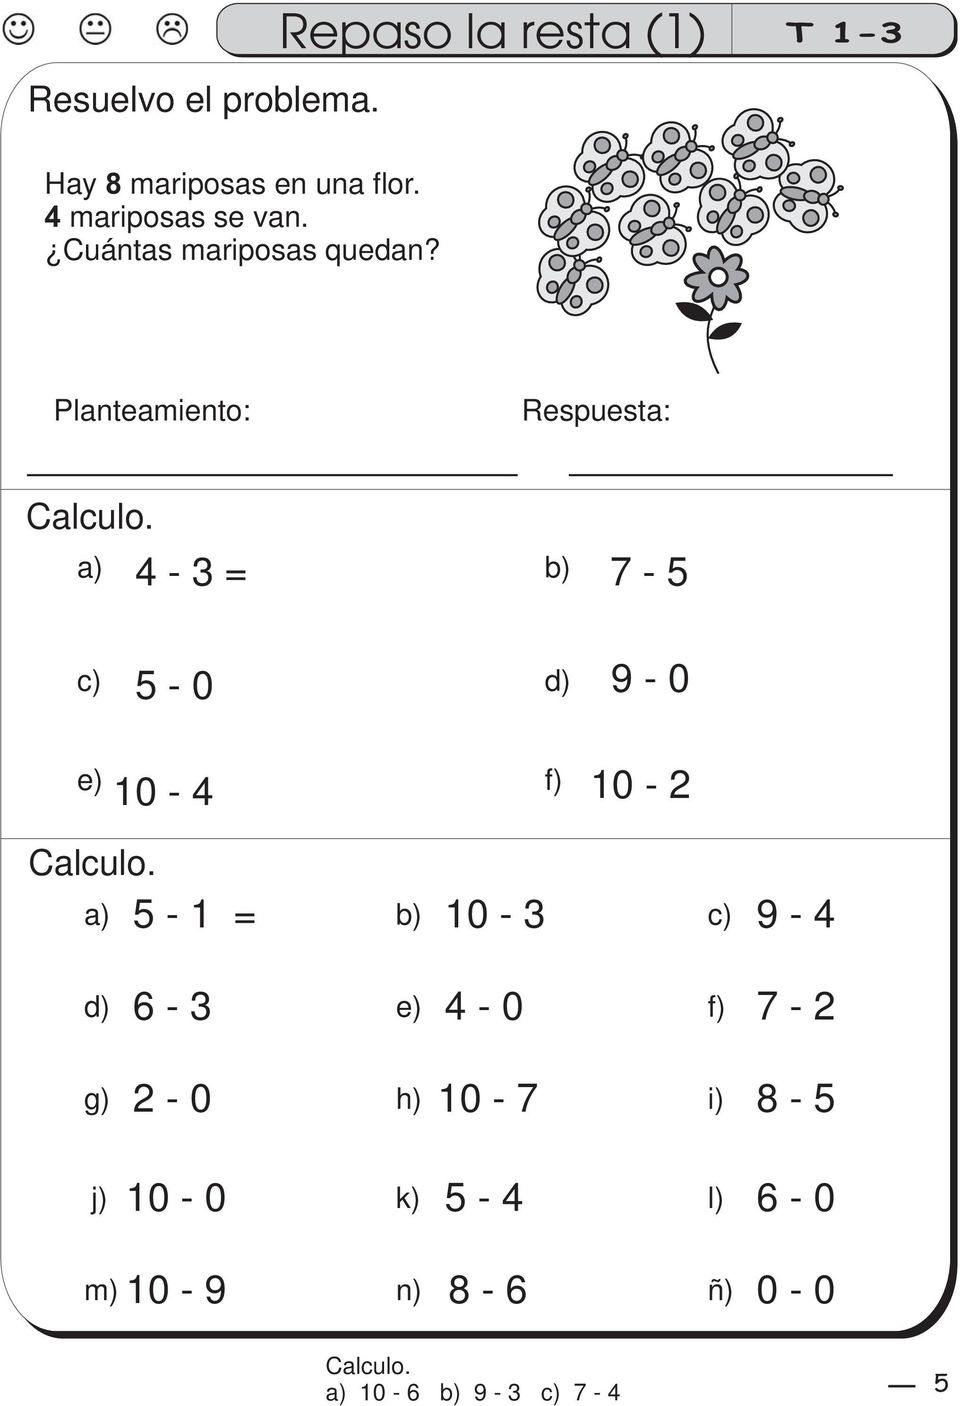 a) 4-3 = b) 7-5 c) 5-0 d) 9-0 e) f) 0-4 0-2 Calculo.